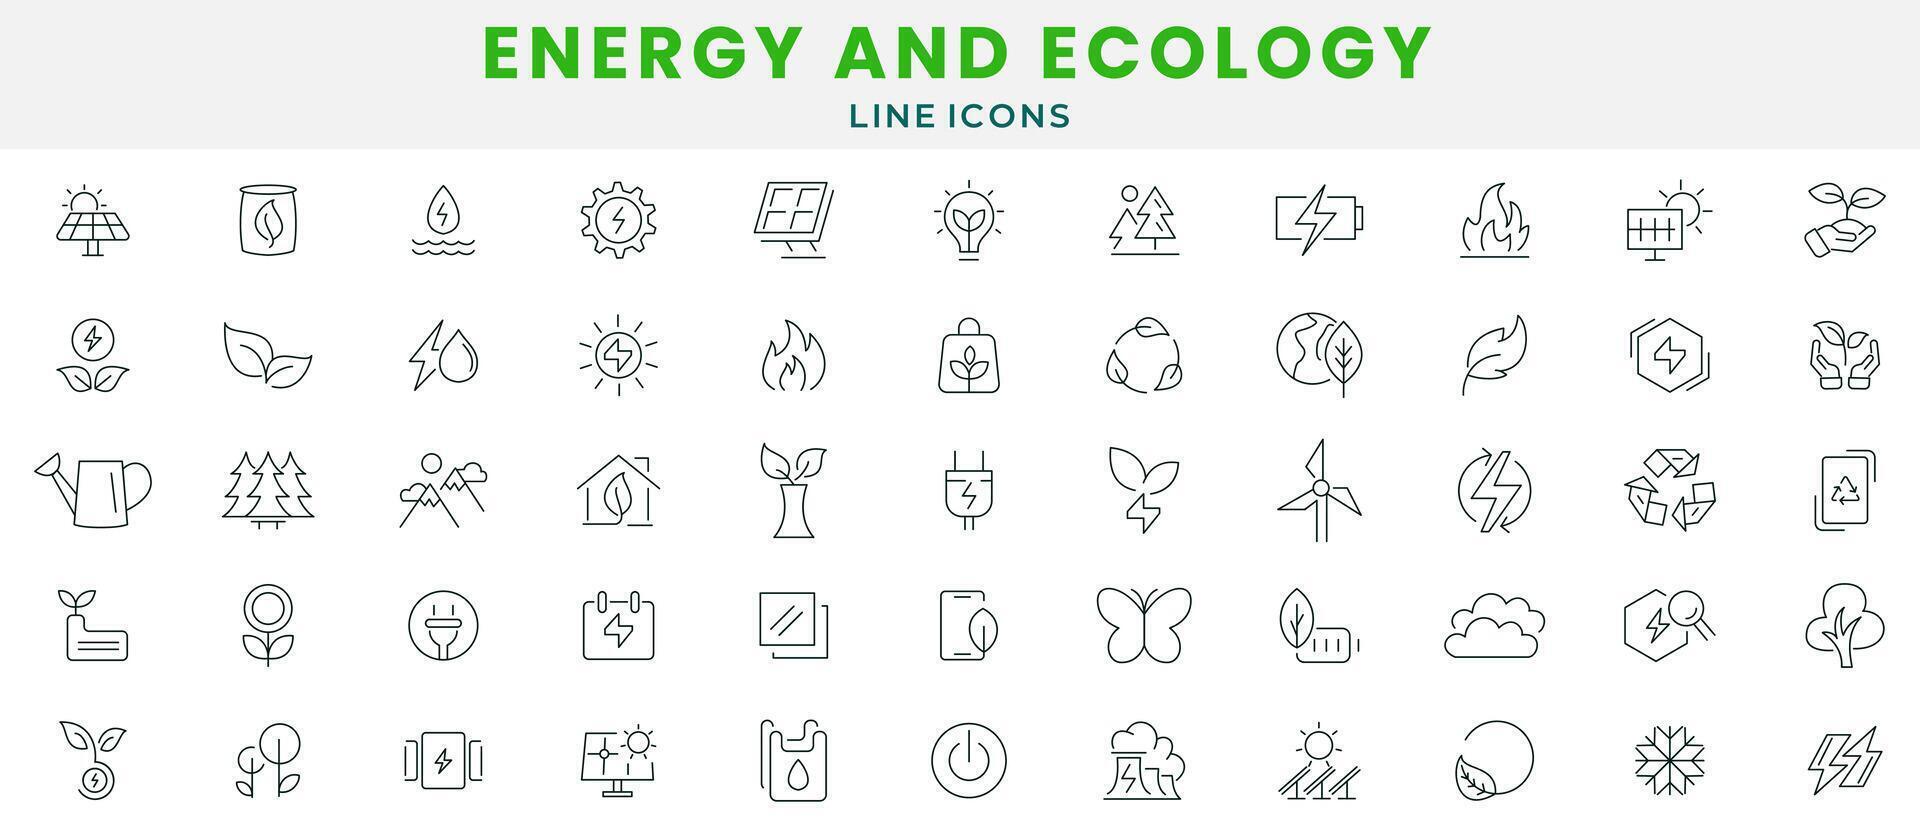 Energie und Ökologie Symbol Satz. Schutz, Planet Pflege, natürlich Recycling Leistung, verlängerbar Energie, Solar- Zellen, Umfeld, verlängerbar Energie, Grün Technologie, Nachhaltigkeit, Natur, Wasser Symbol vektor